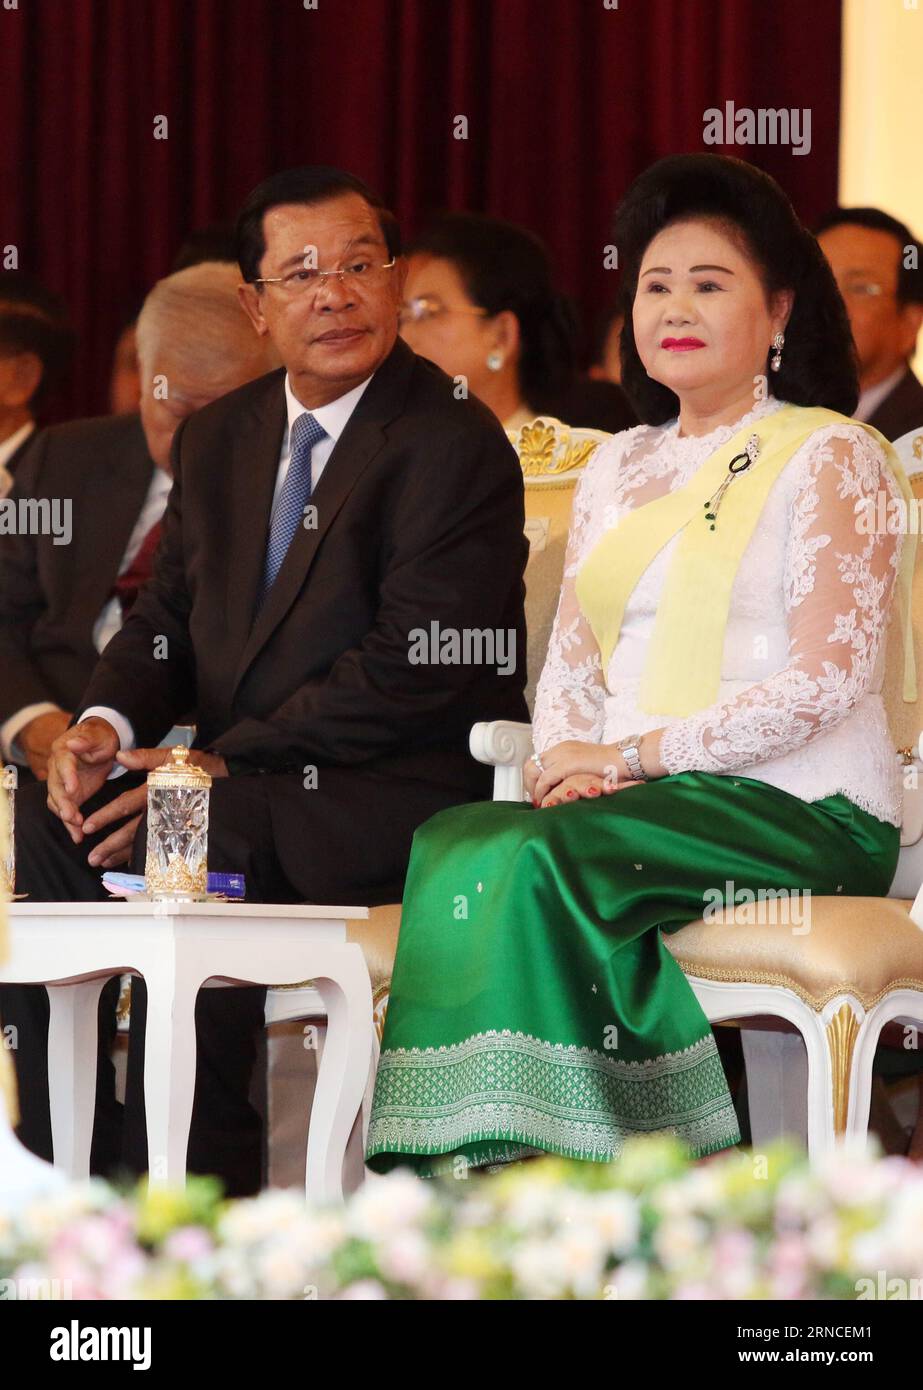 Kambodschas König Norodom Sihamoni während Zeremonie zum bevorstehenden Neujahrsfest (160407) -- PHNOM PENH, le 7 avril 2016 -- le Premier ministre cambodgien Hun Sen (à gauche, devant) et son épouse Bun Rany (à droite, devant) assistent à une cérémonie de bénédiction à Phnom Penh, au Cambodge, le 7 avril 2016. L'Union des Fédérations de jeunes du Cambodge (UYFC) a organisé une cérémonie de bénédiction pour le roi Norodom Sihamoni jeudi soir avant le nouvel an lunaire, qui commence la semaine prochaine du 13 au 16 avril. ) CAMBODGE-PHNOM PENH-ROI-CÉRÉMONIE DE BÉNÉDICTION SOVANNARA PUBLICATIONXNOTXINXCHN Banque D'Images